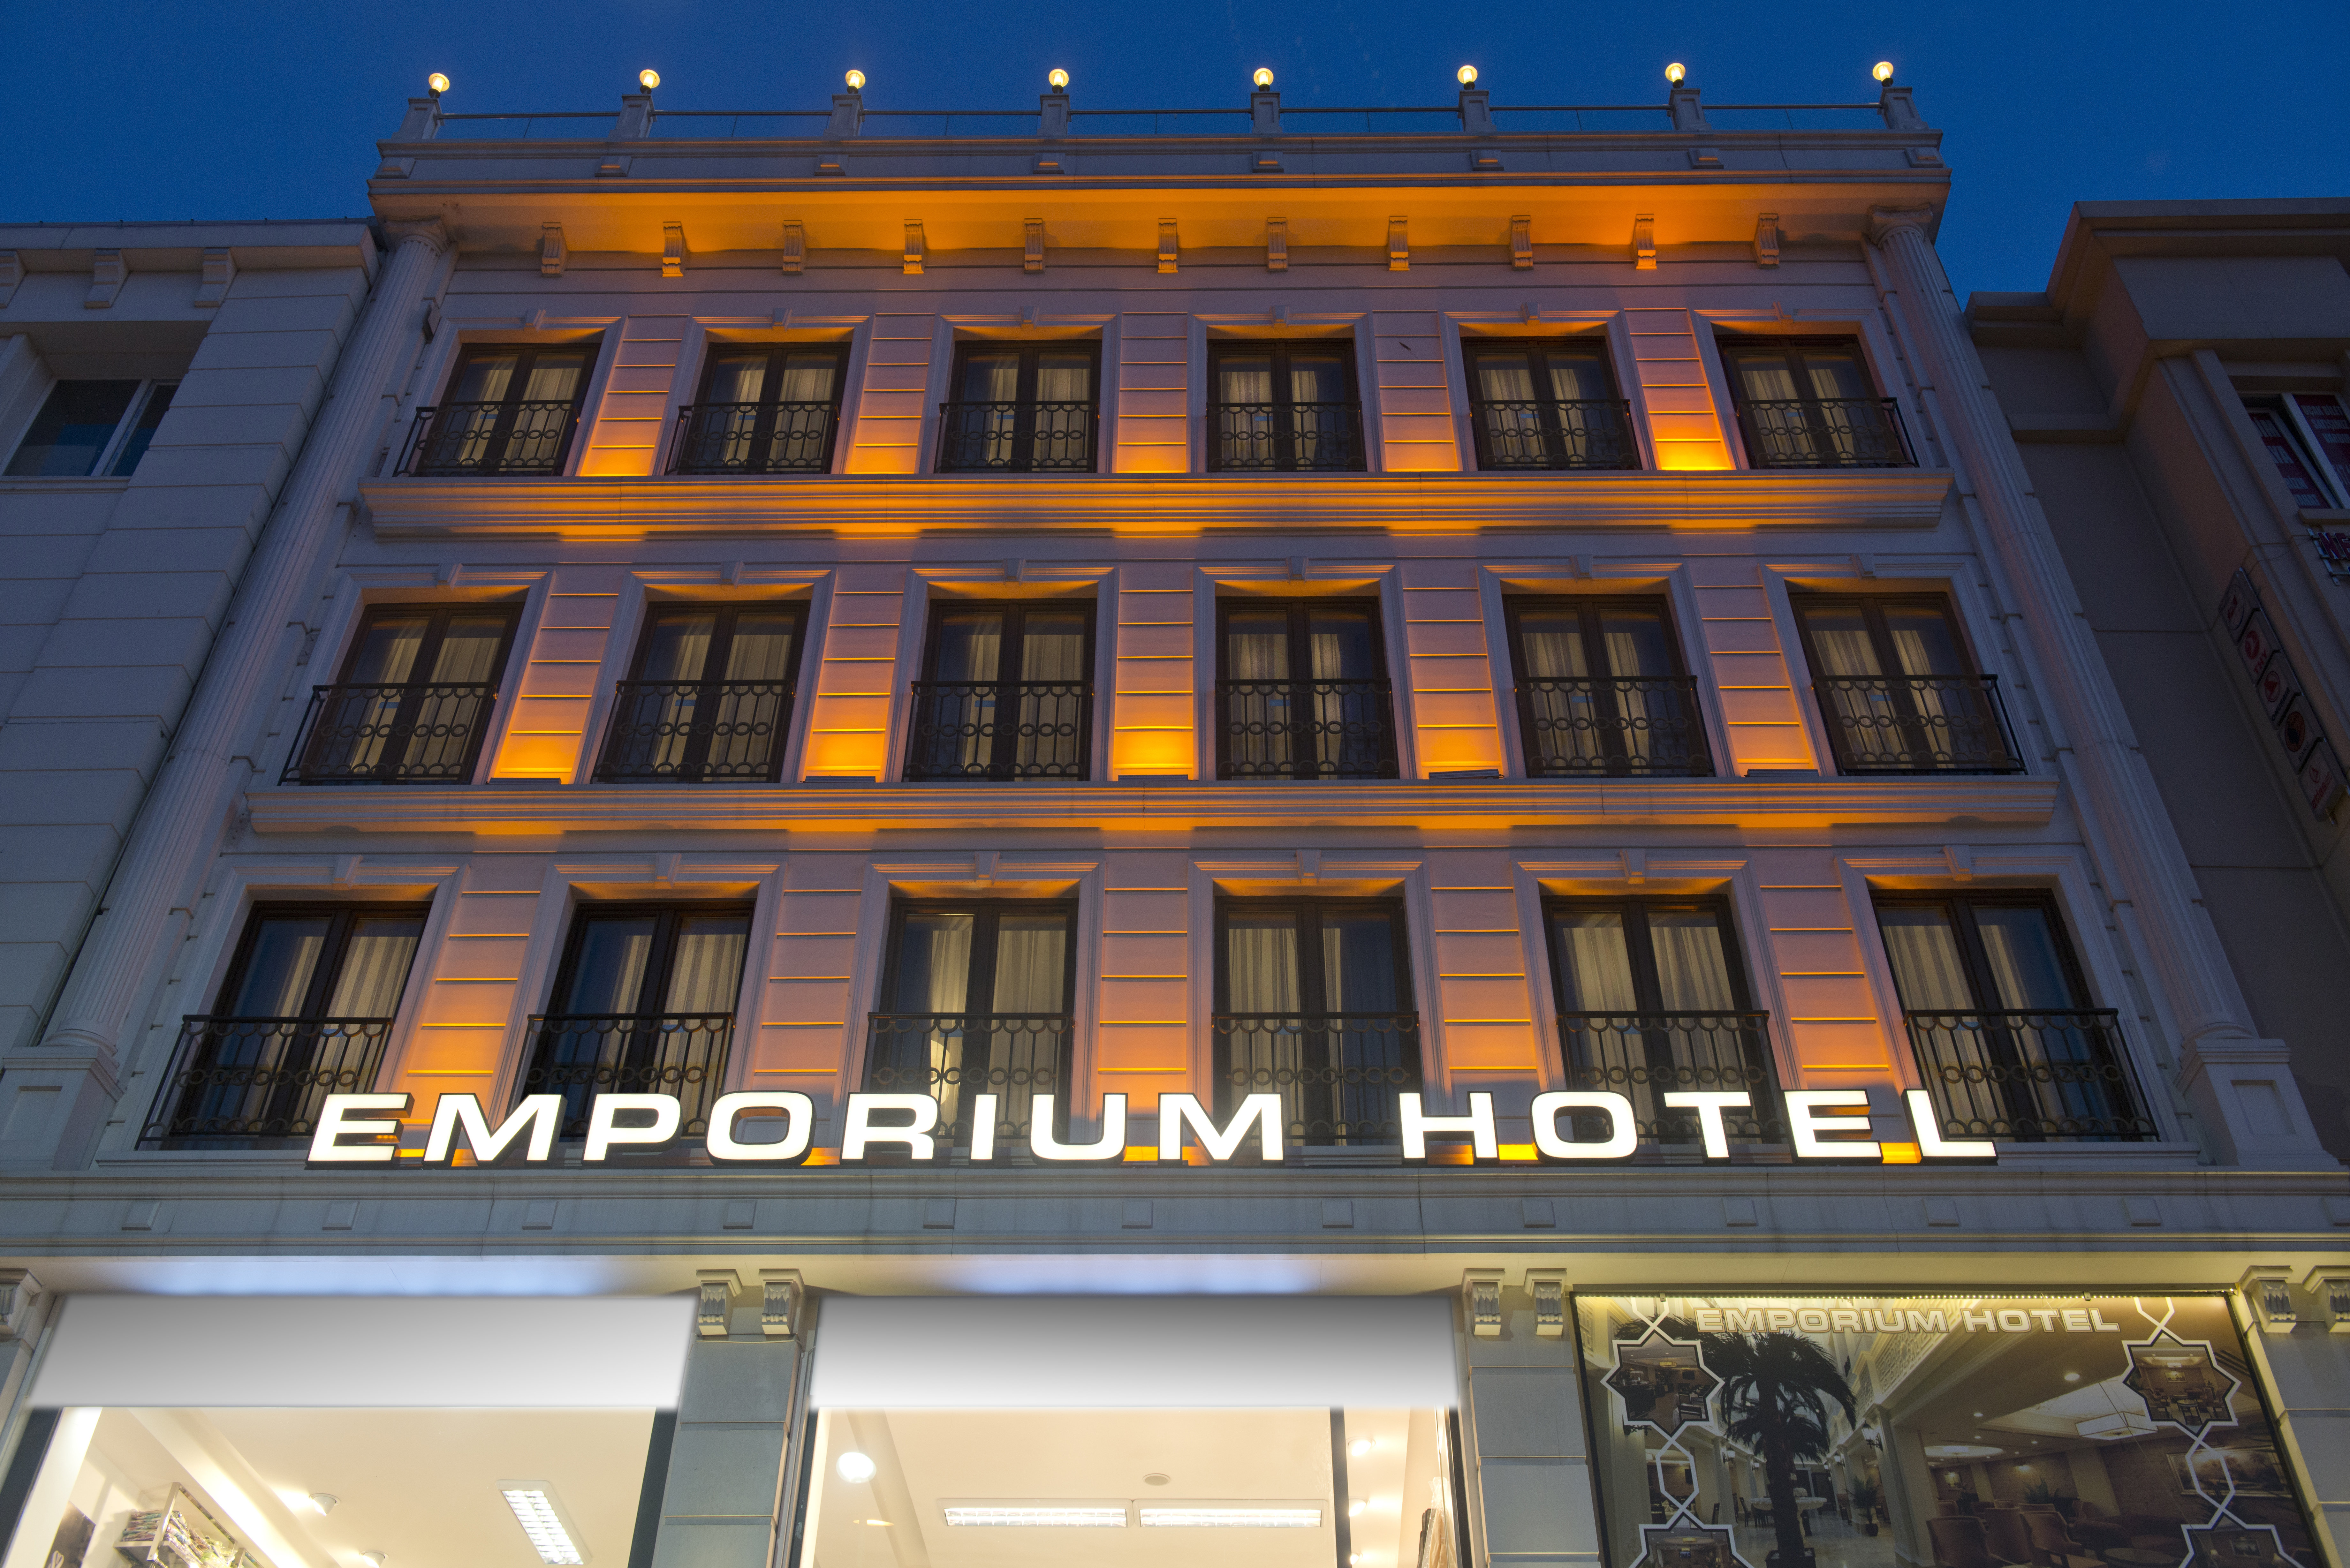 Emporium Hotel